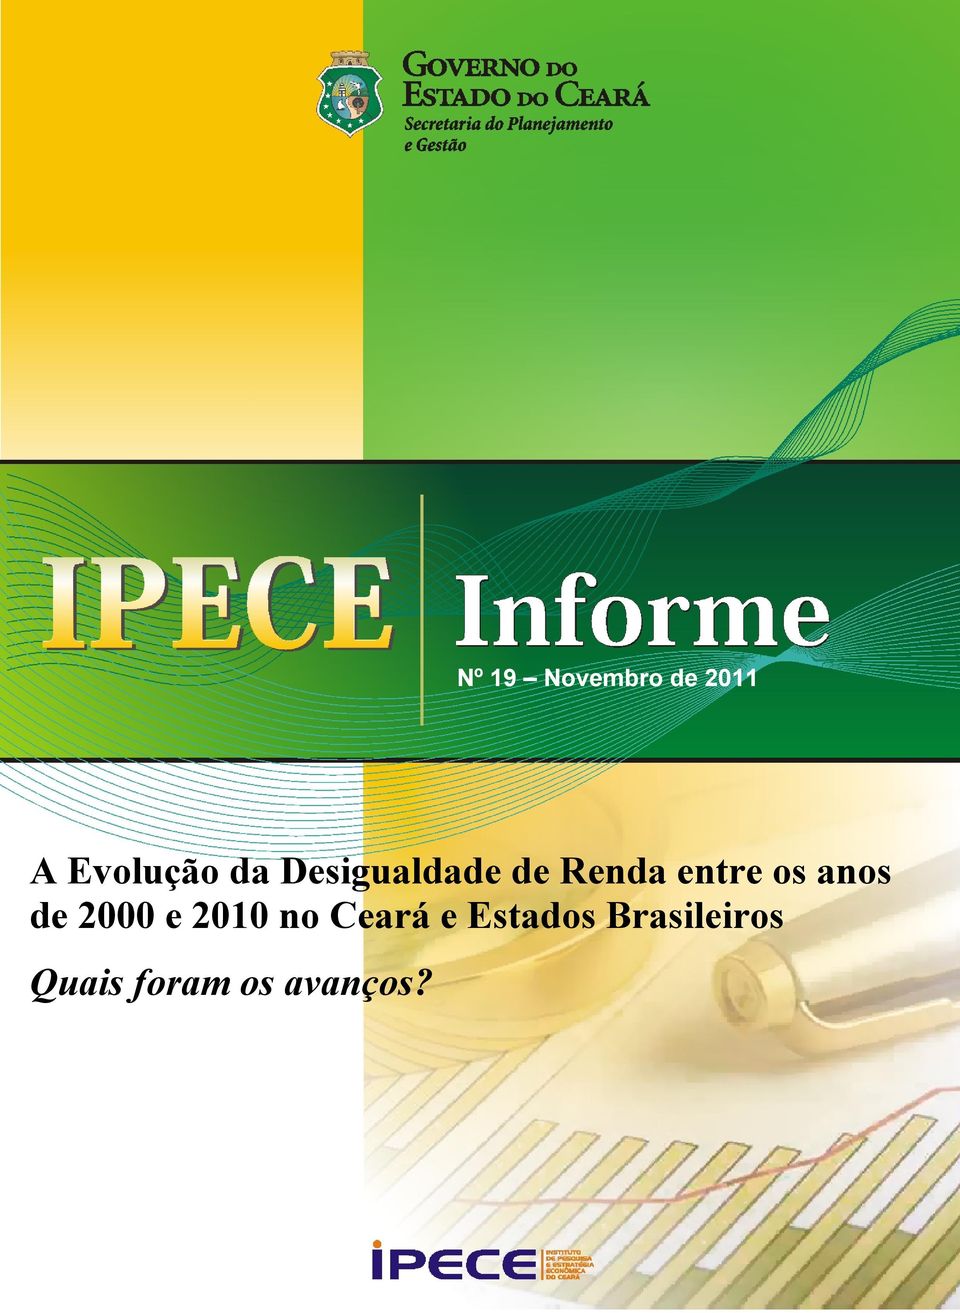 anos de 2000 e 2010 no Ceará e